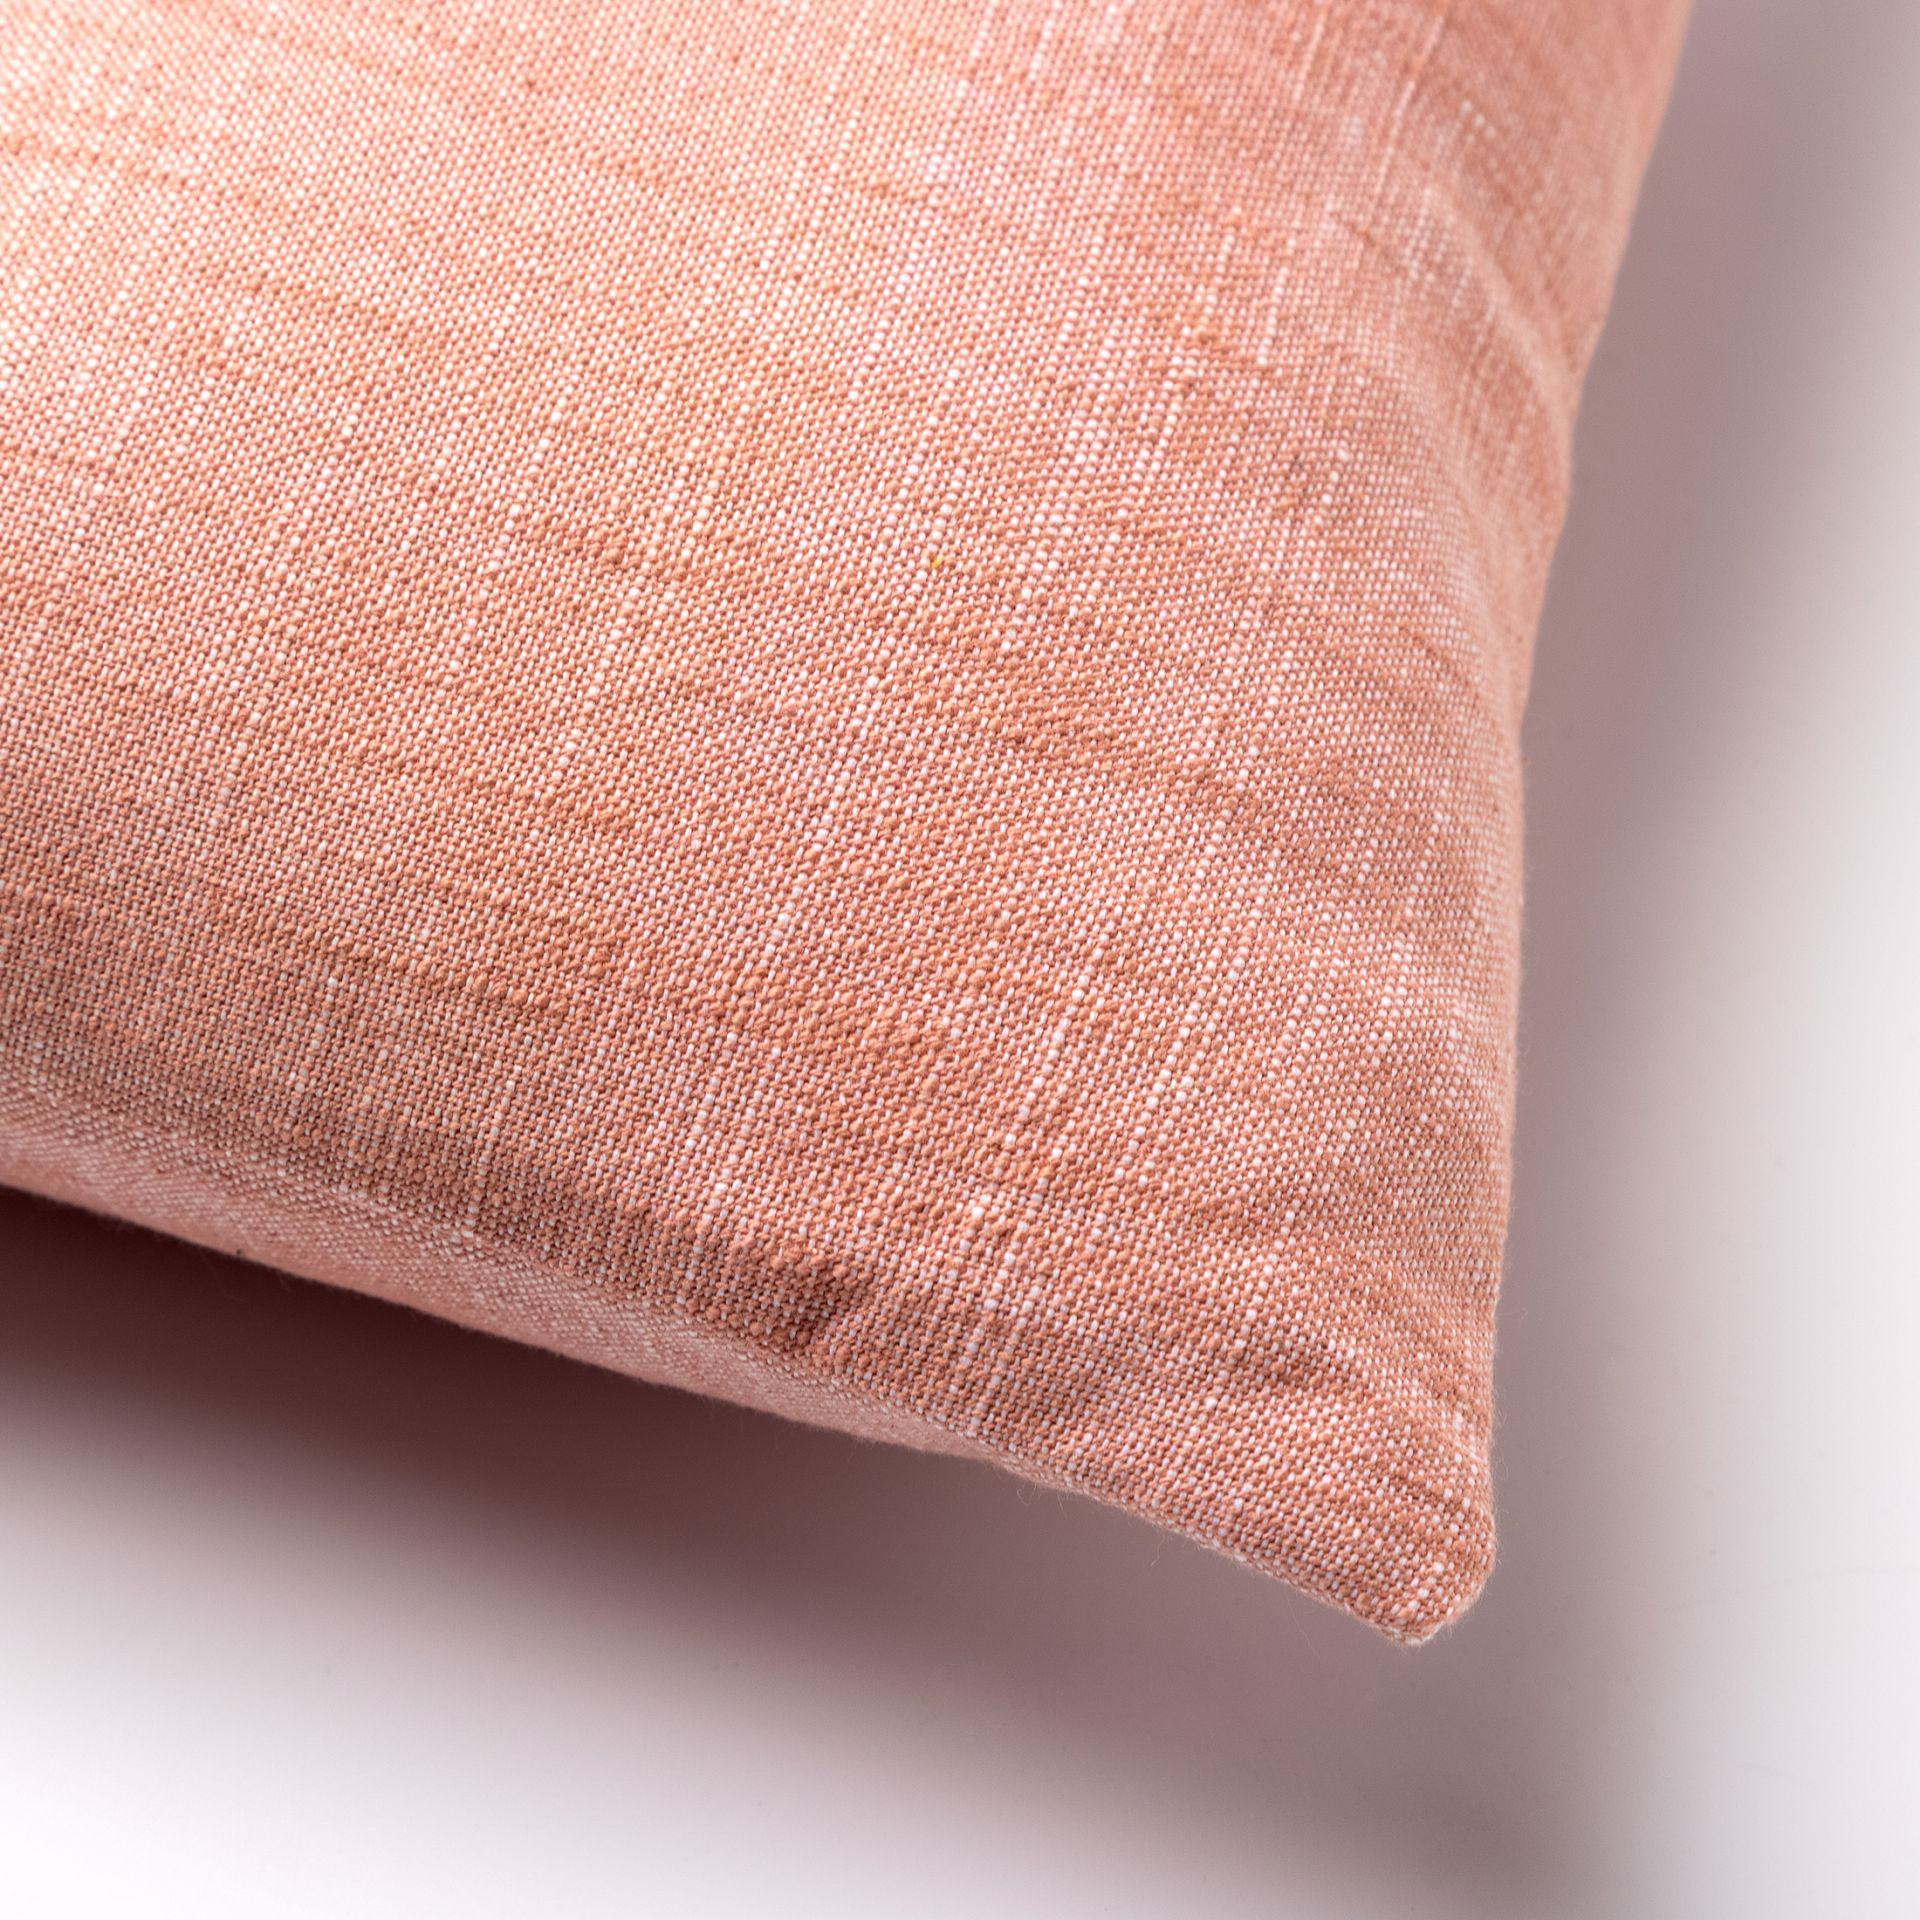 NATURA - Kussenhoes 45x45 cm - 100% biologisch katoen - Muted Clay - roze